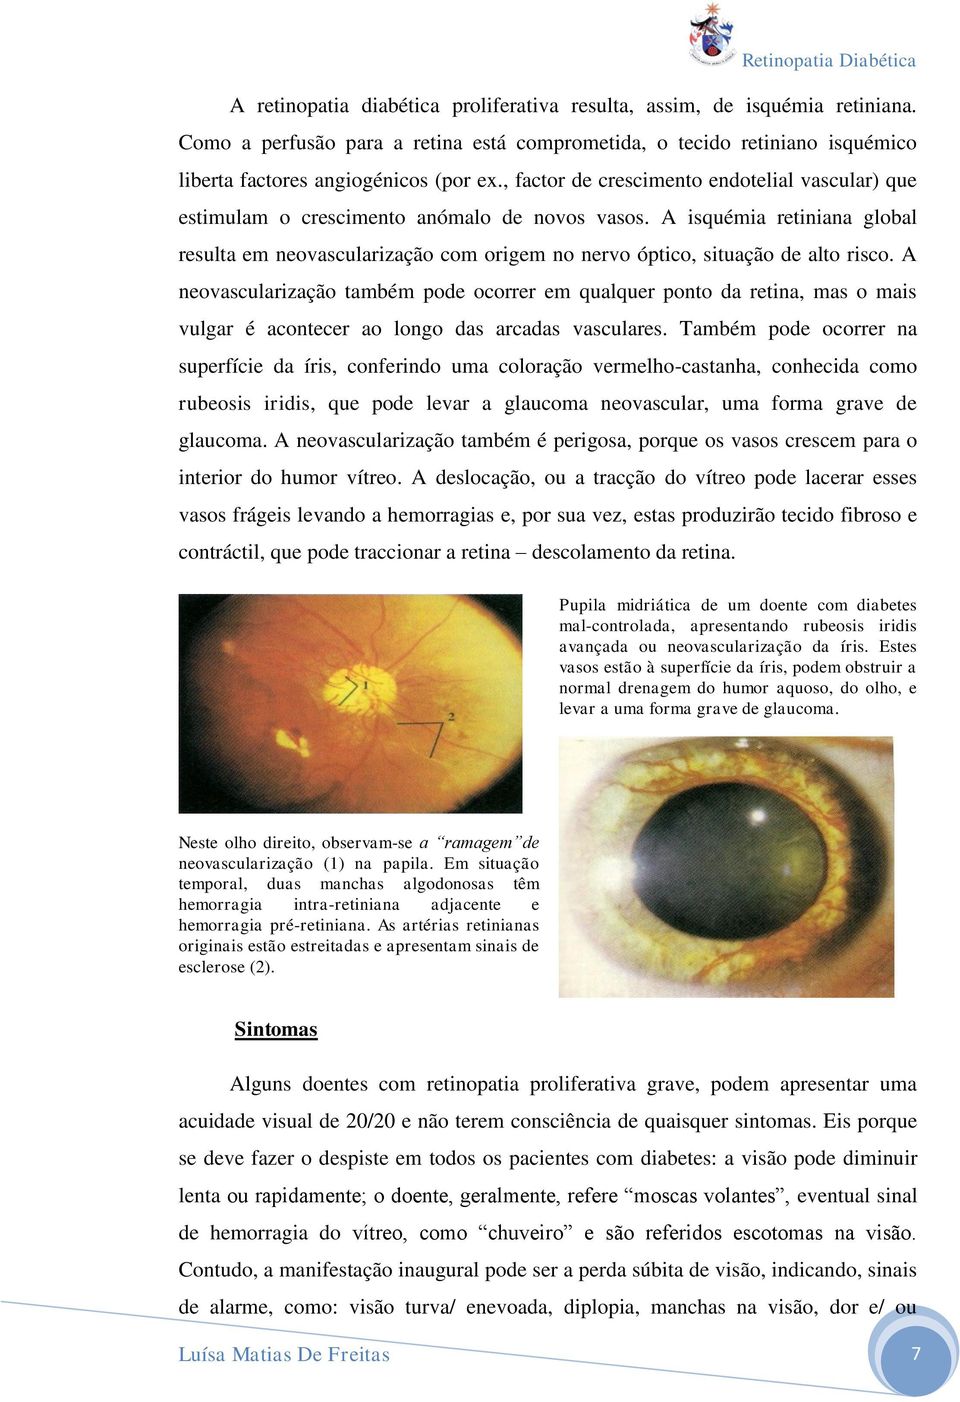 A isquémia retiniana global resulta em neovascularização com origem no nervo óptico, situação de alto risco.